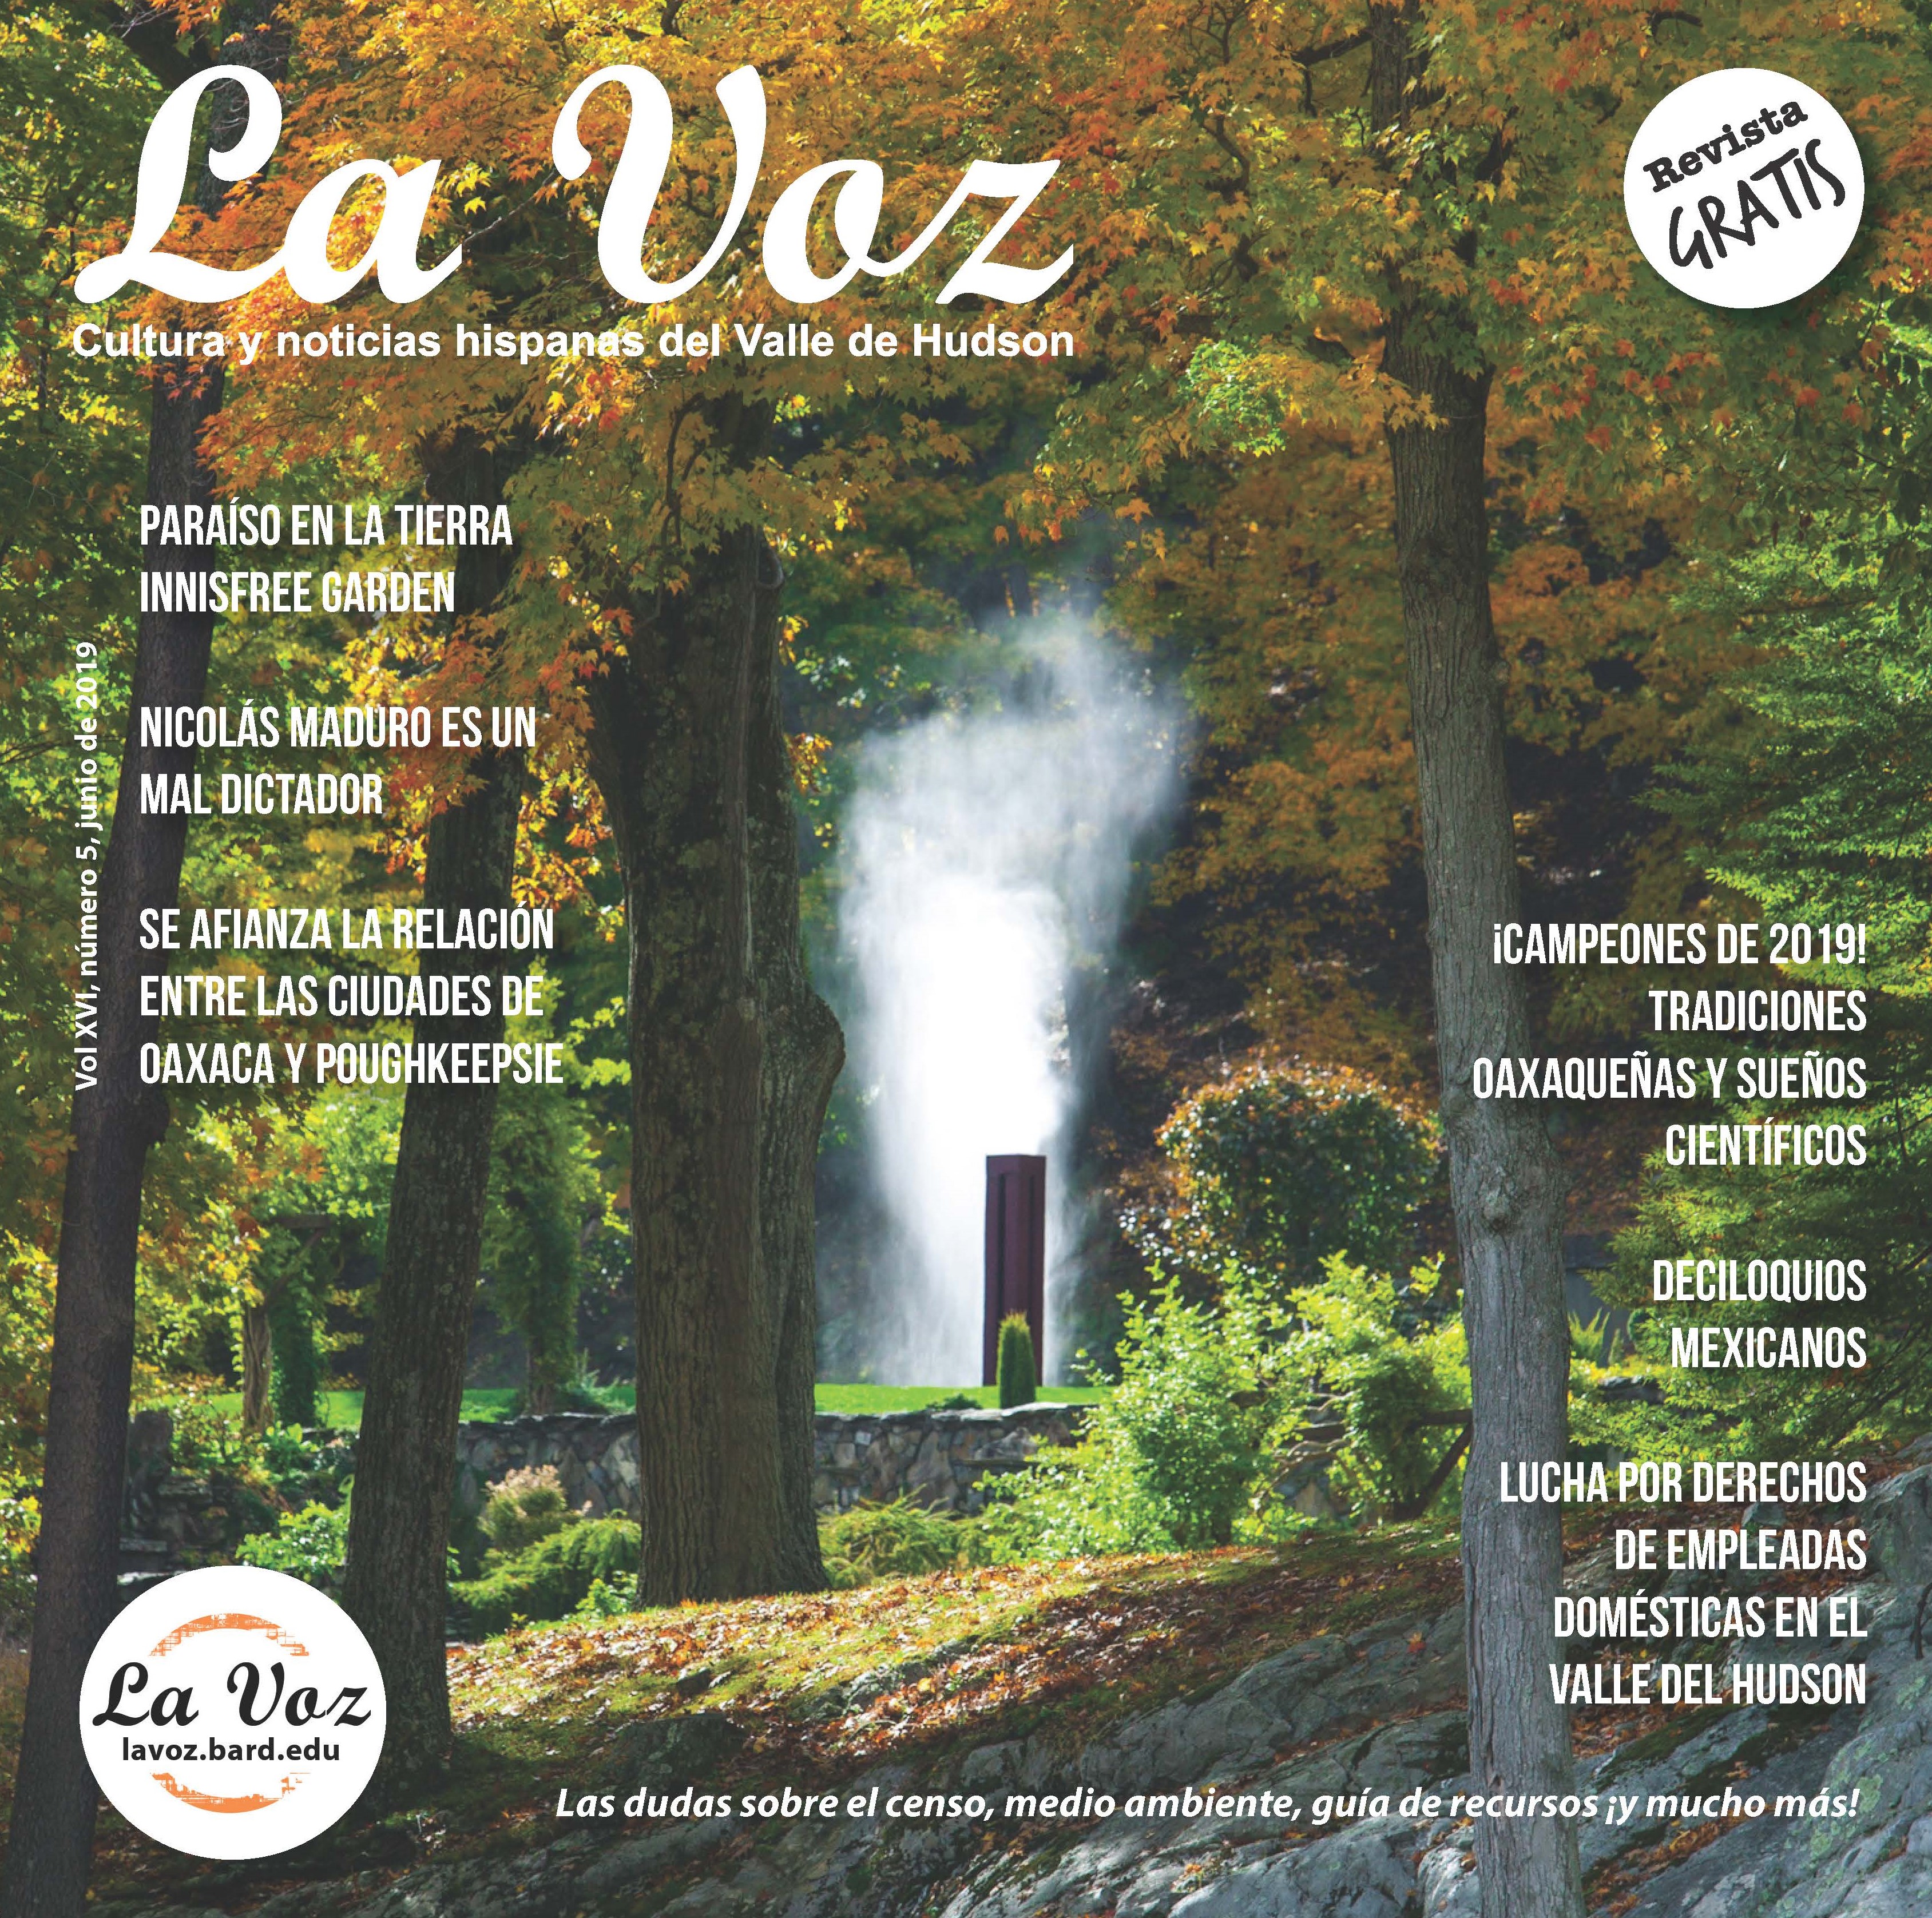 Imagen de la portada&nbsp;de la revista La Voz de junio, foto cr&eacute;dito Innis Garden